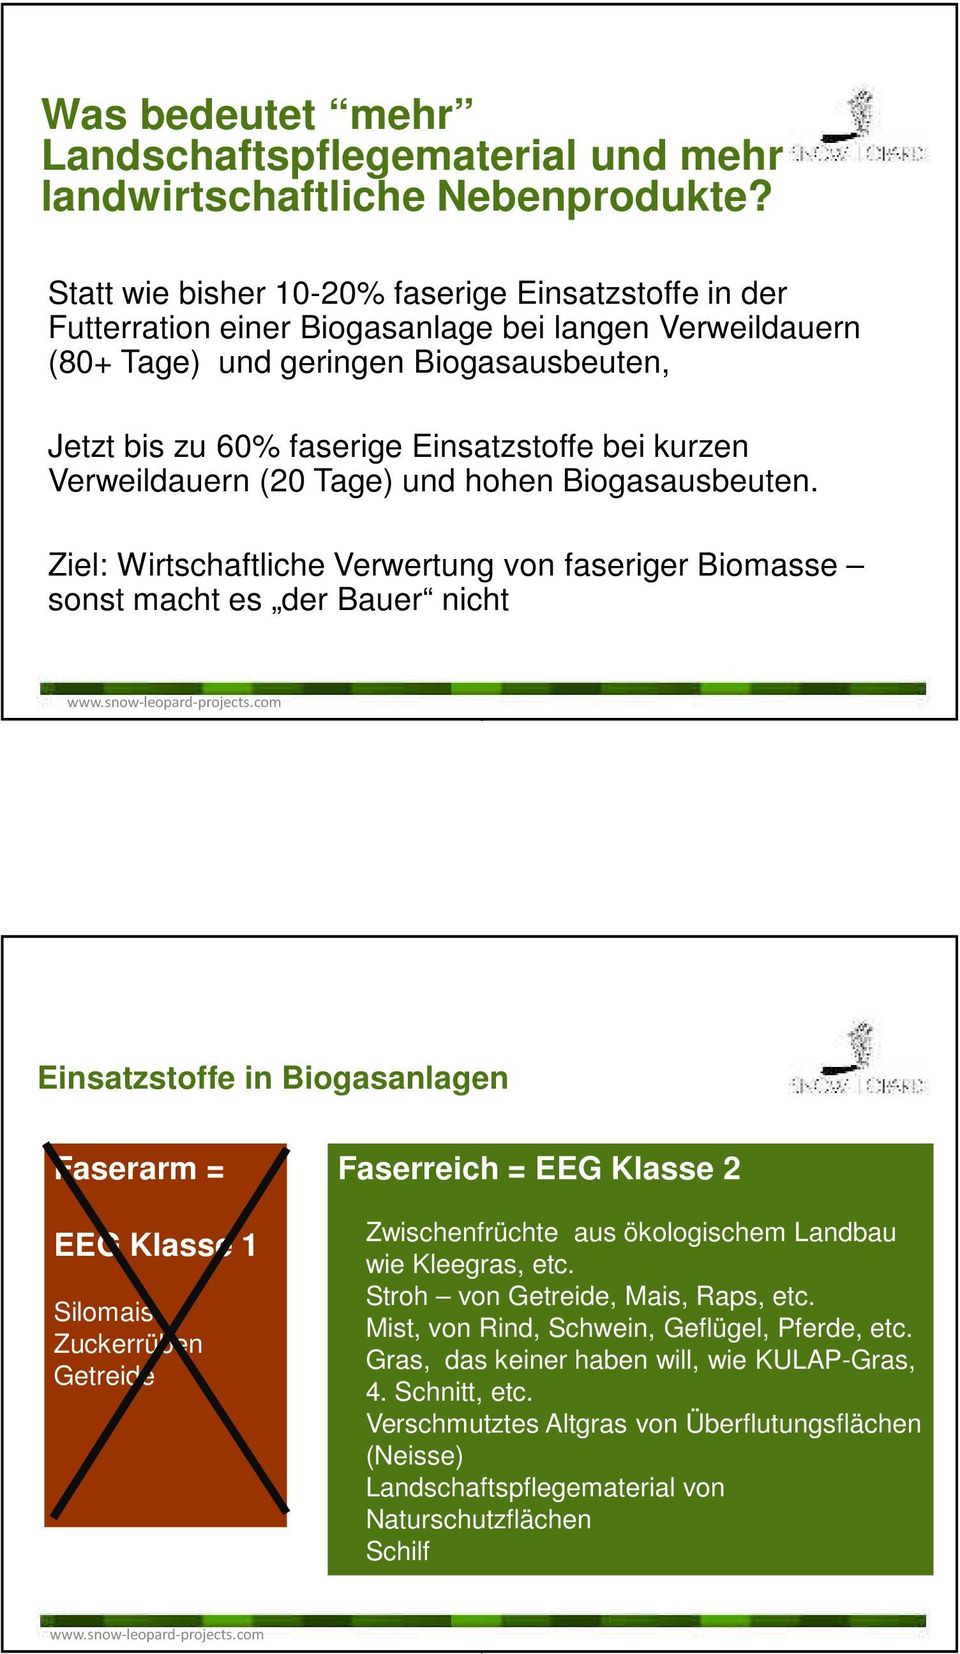 kurzen Verweildauern (20 Tage) und hohen Biogasausbeuten Ziel: Wirtschaftliche Verwertung von faseriger Biomasse sonst macht es der Bauer nicht wwwsnow-leopard-projectscom Einsatzstoffe in